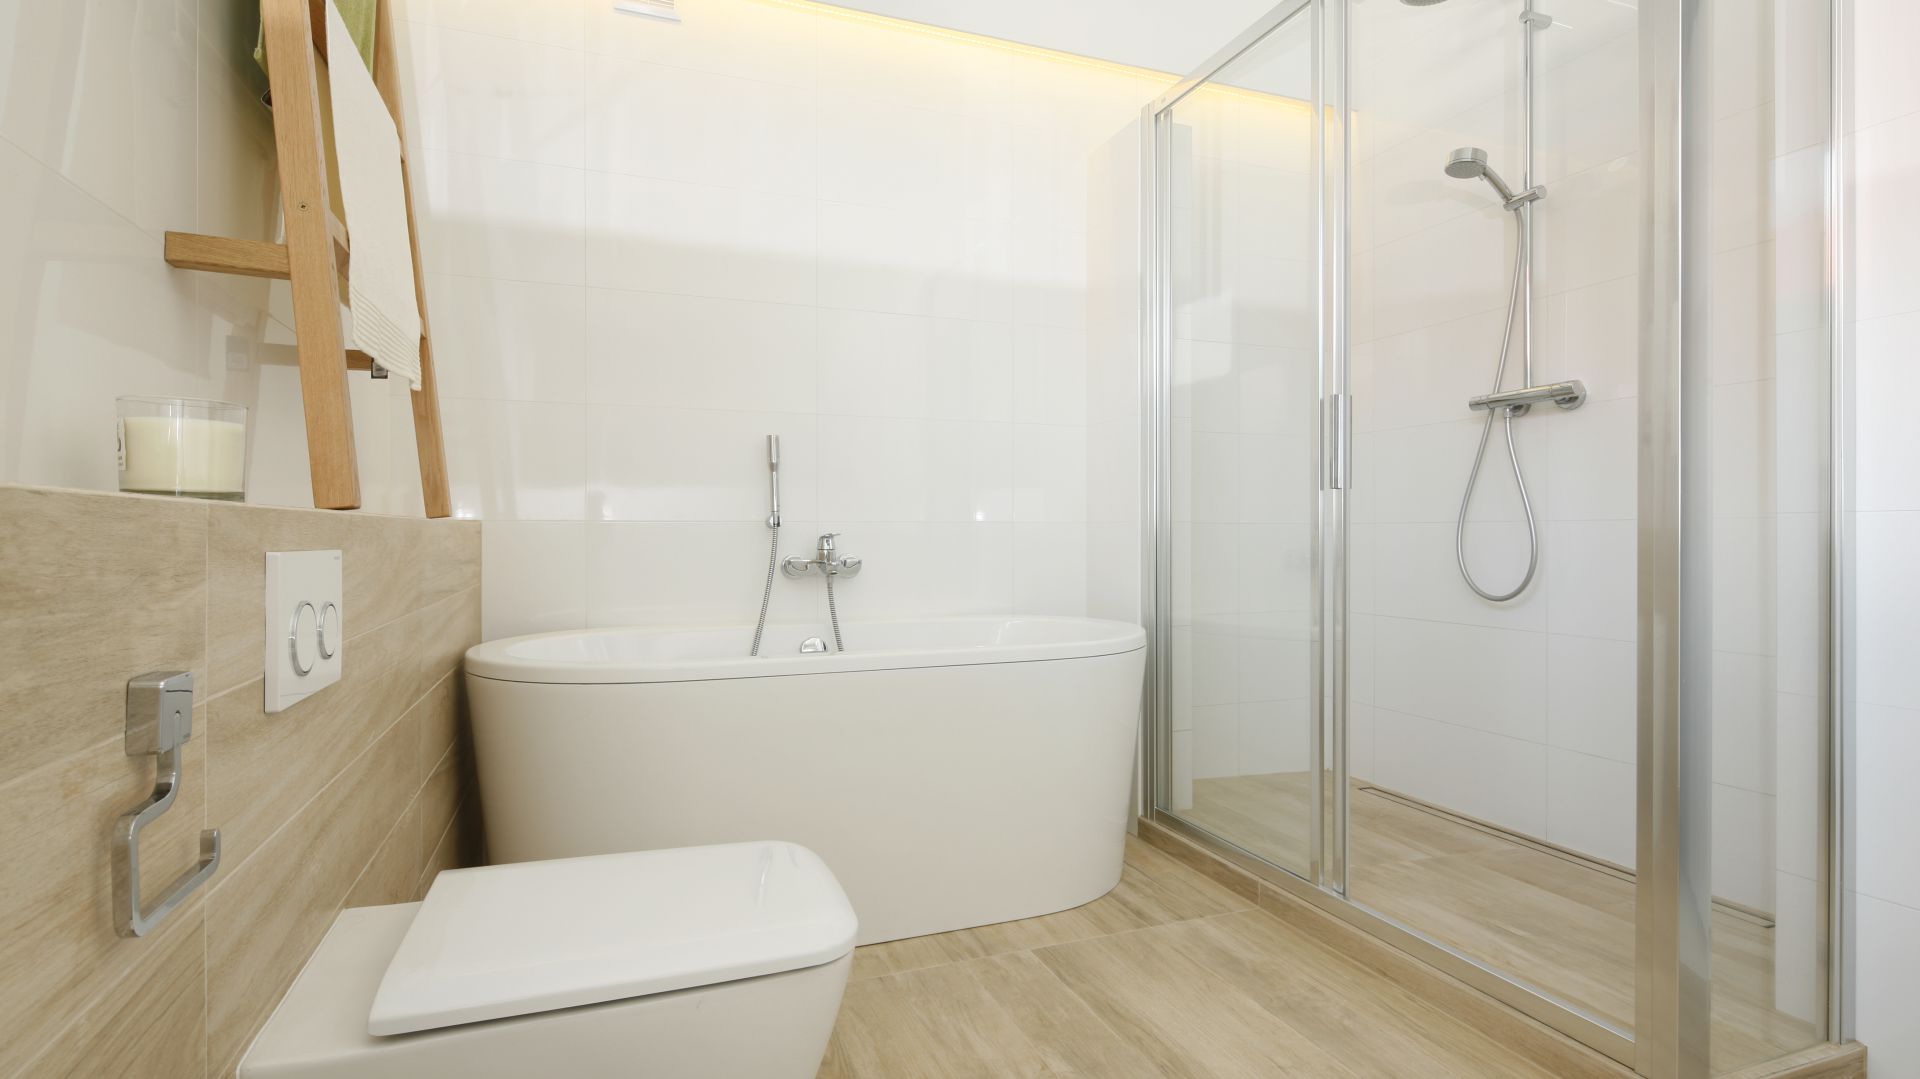 Piękna, jasna łazienka - zobacz gotowy projekt w stylu skandynawskim